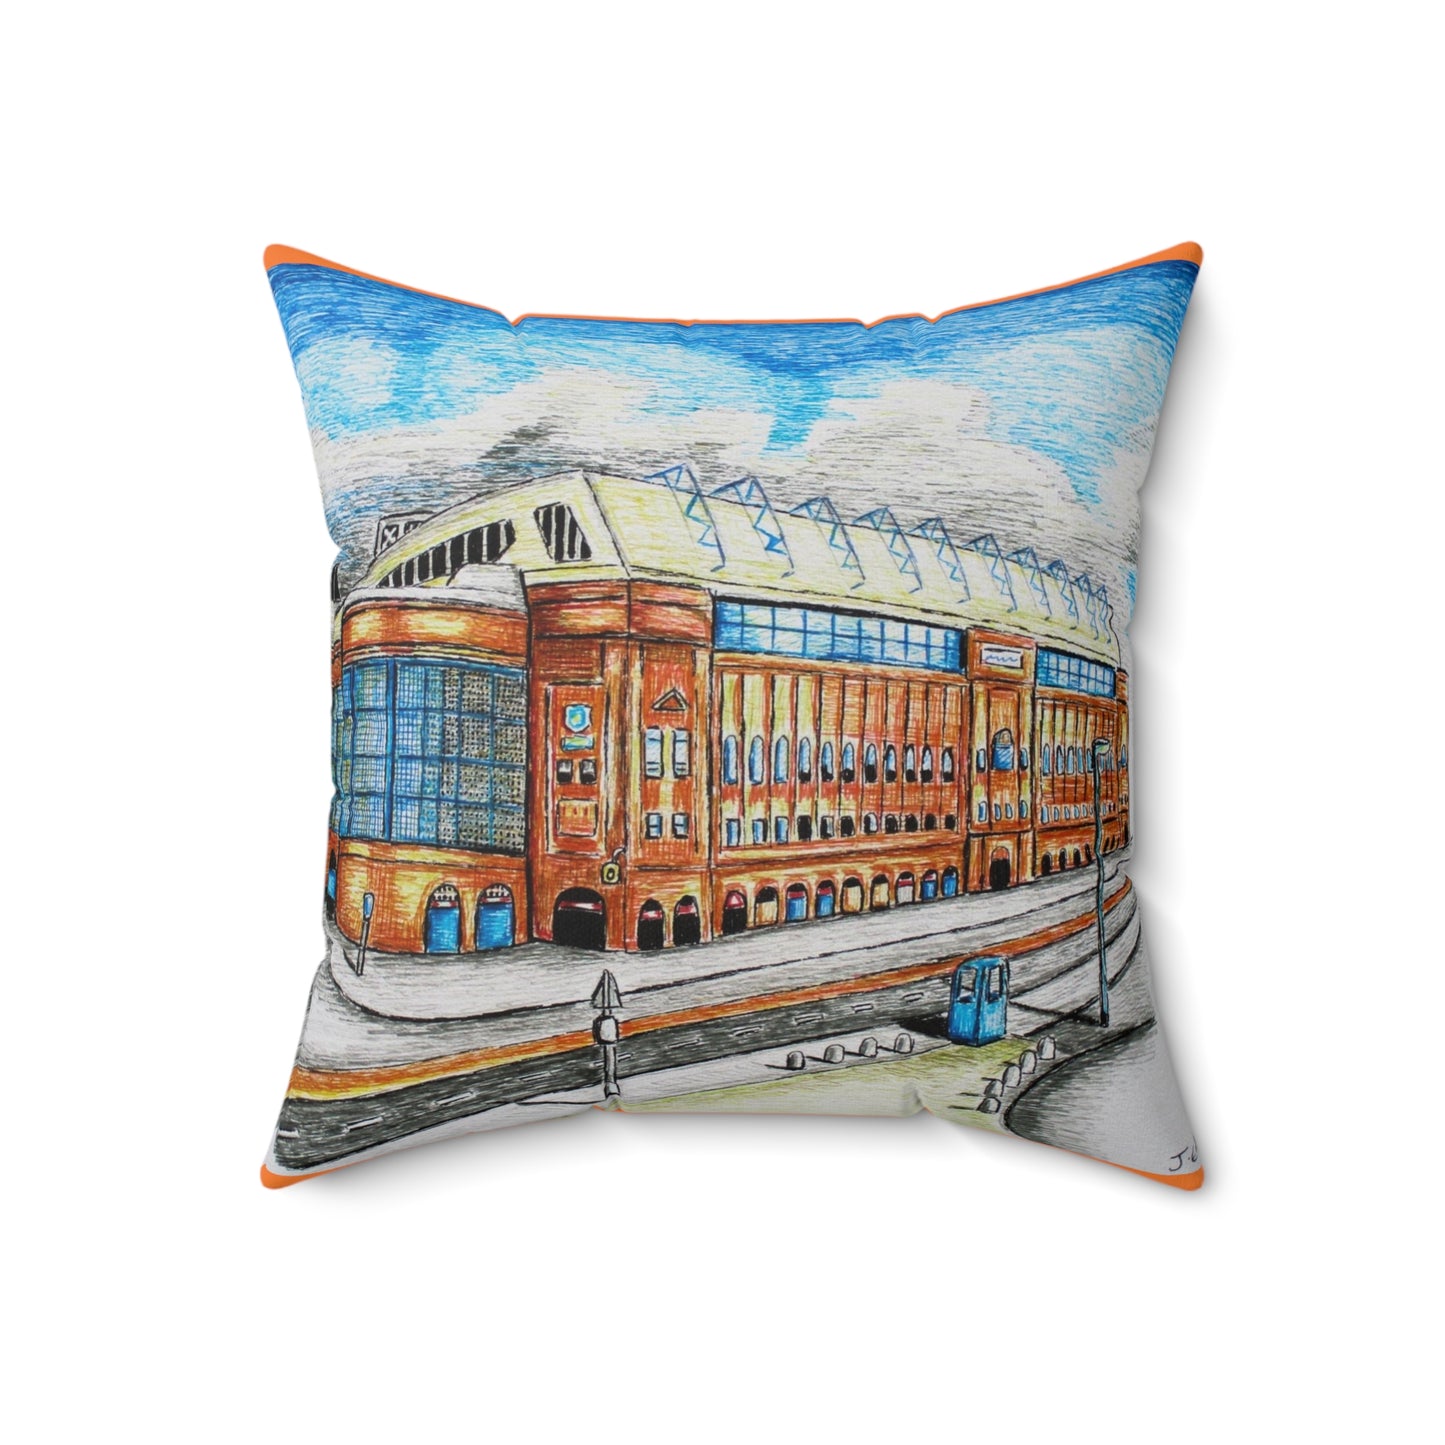 Indoor decorative cushion- Rangers FC, Ibrox Stadium